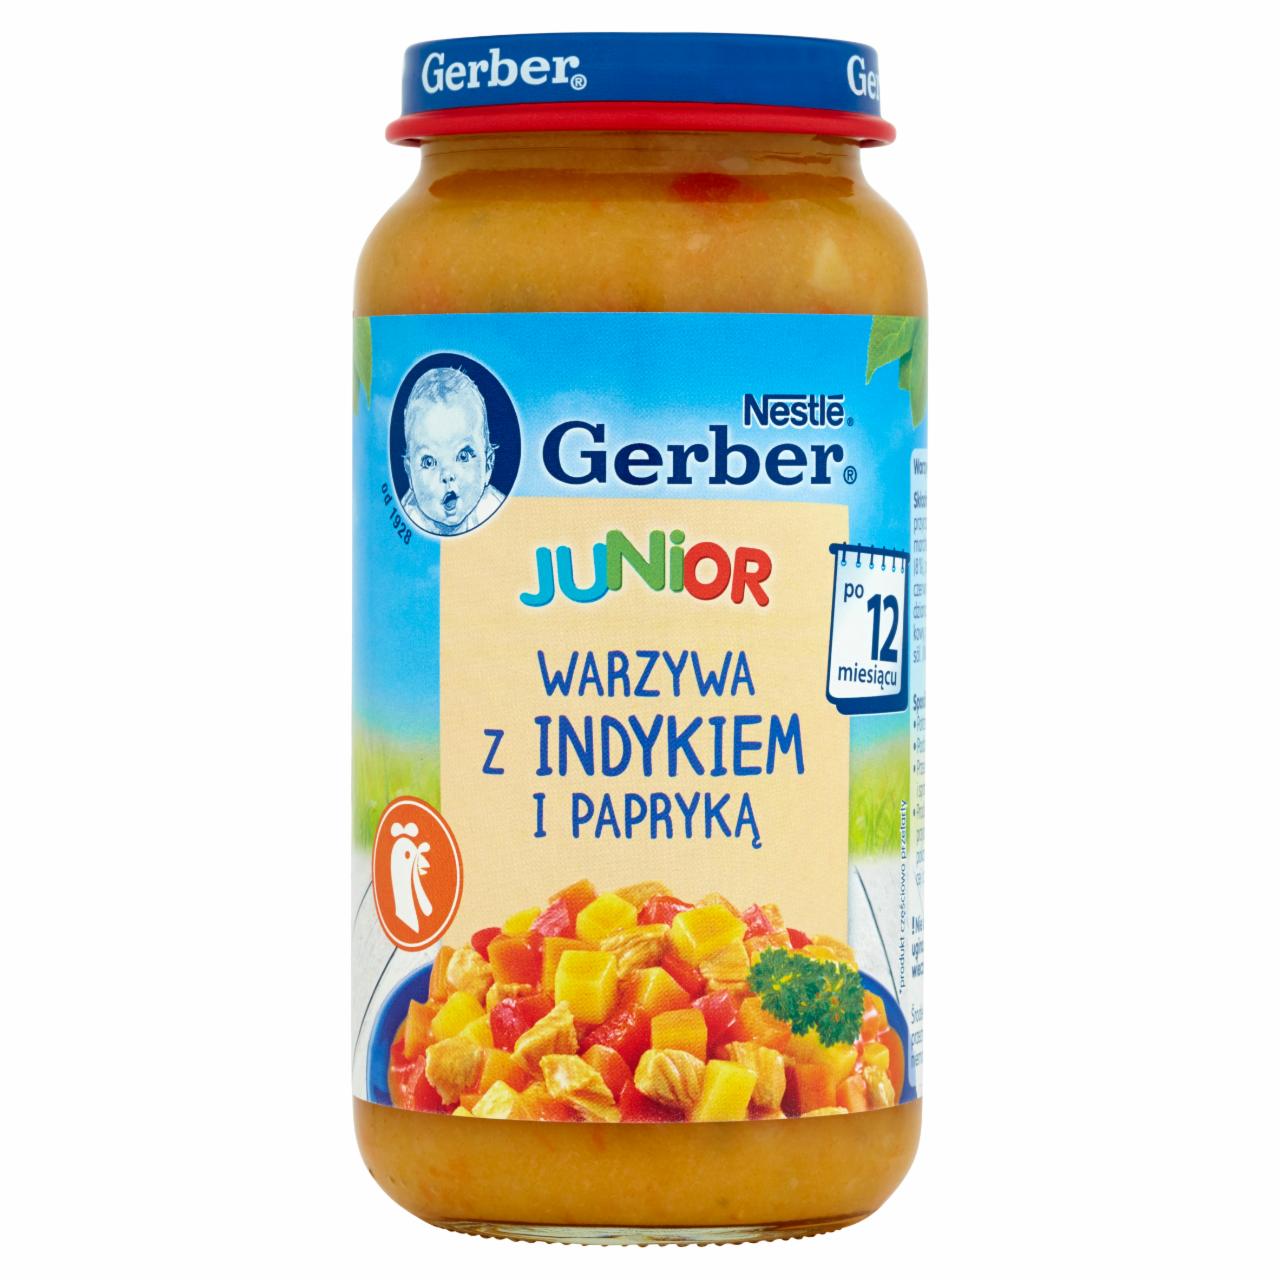 Zdjęcia - Gerber Junior Warzywa z indykiem i papryką po 12 miesiącu 250 g